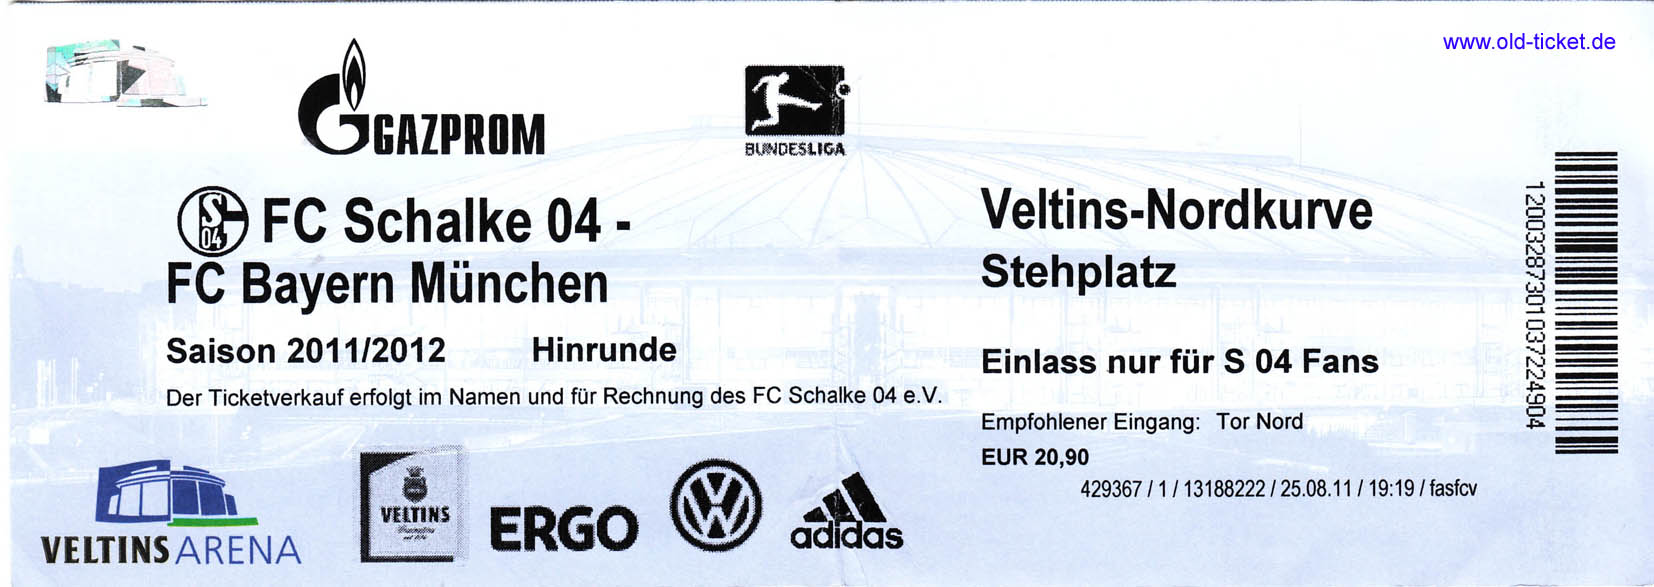 Tickets Gladbach Schalke